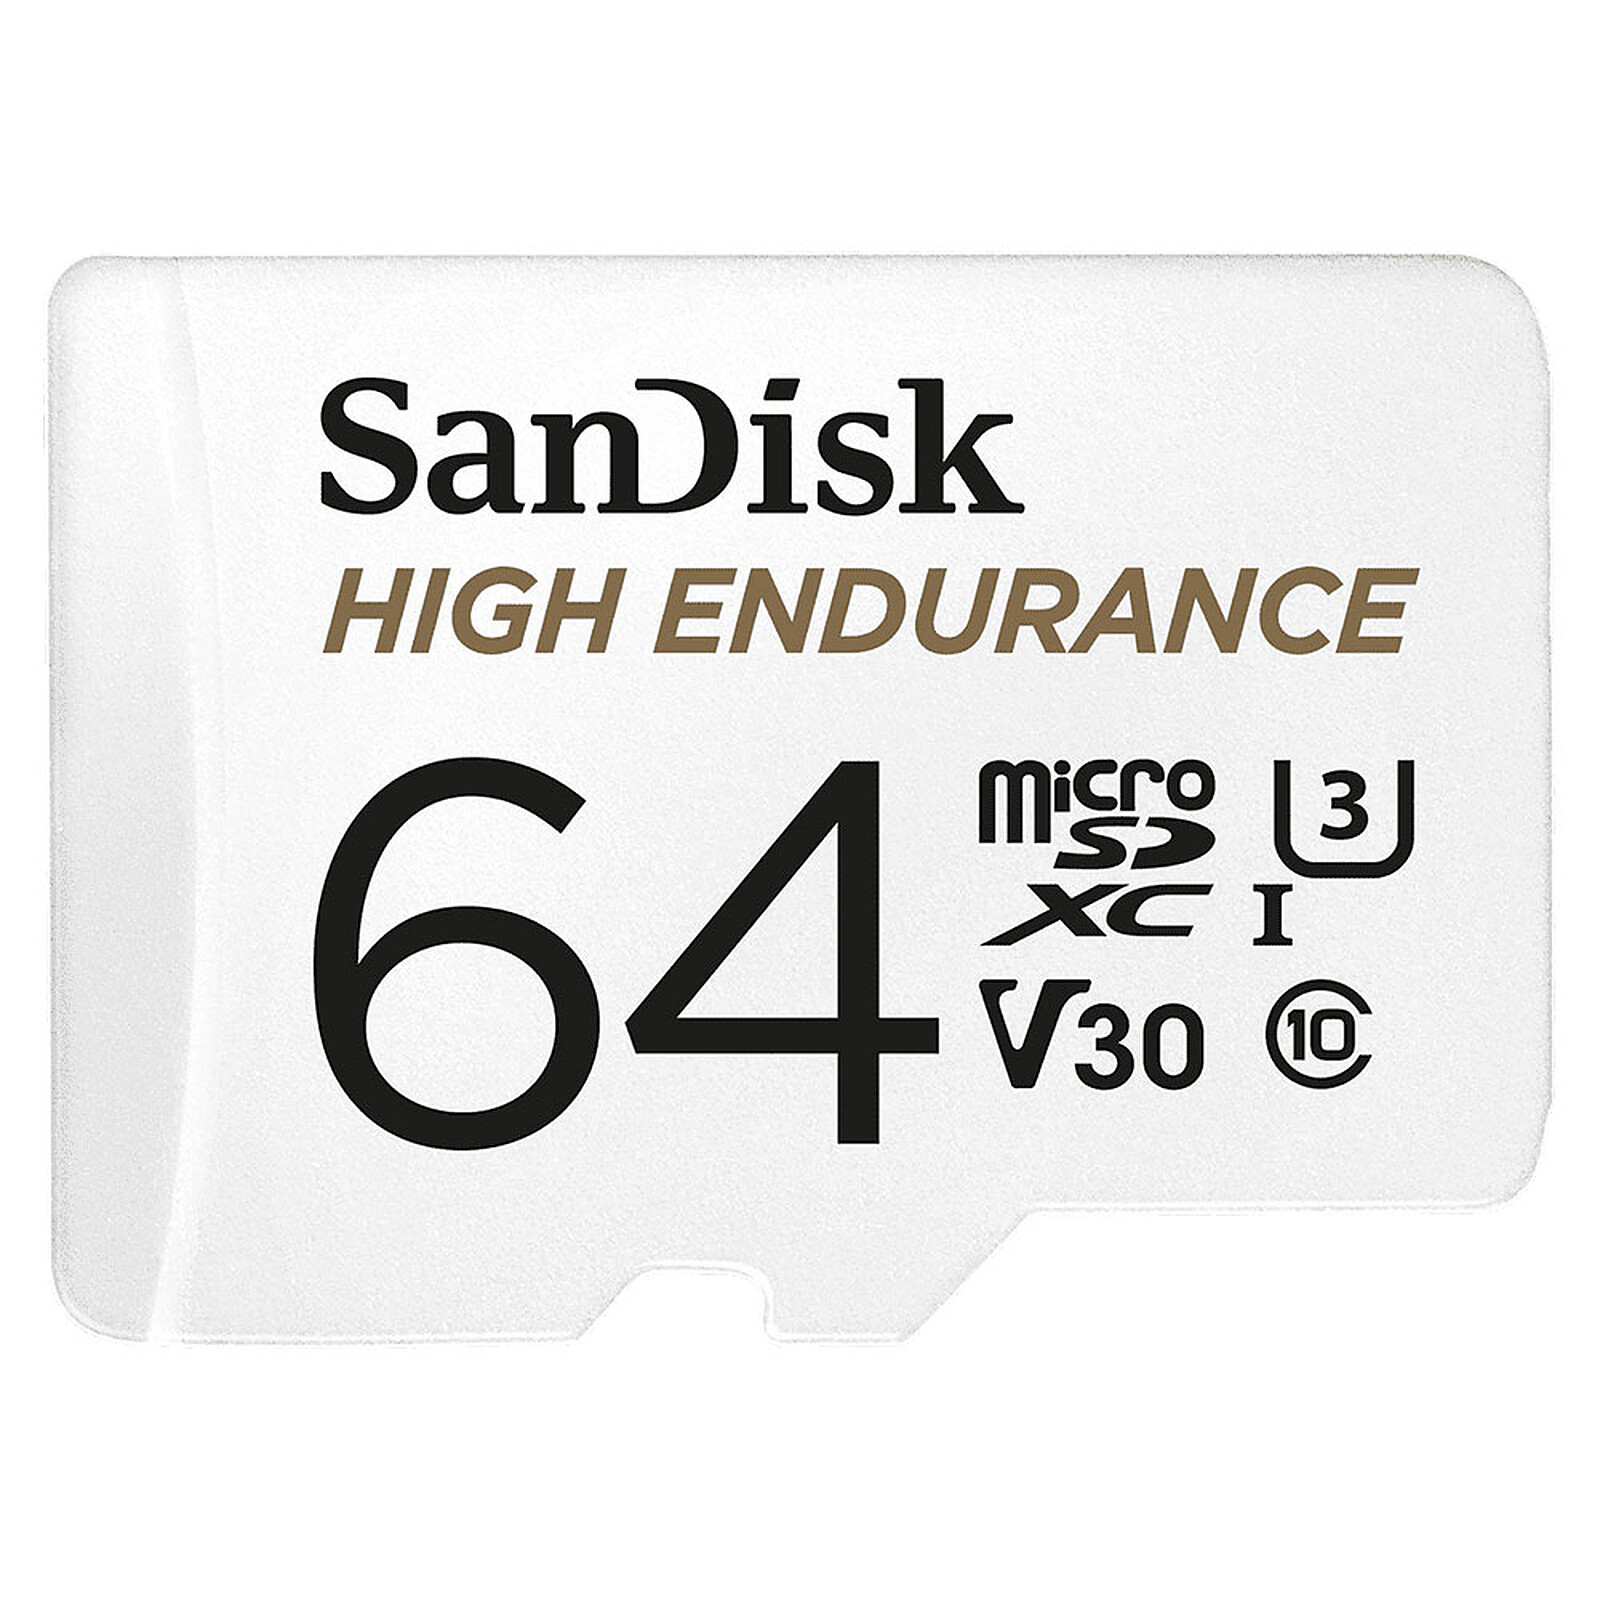 SanDisk Lecteur/Graveur Extreme PRO SD UHS-II - Lecteur carte mémoire -  Garantie 3 ans LDLC